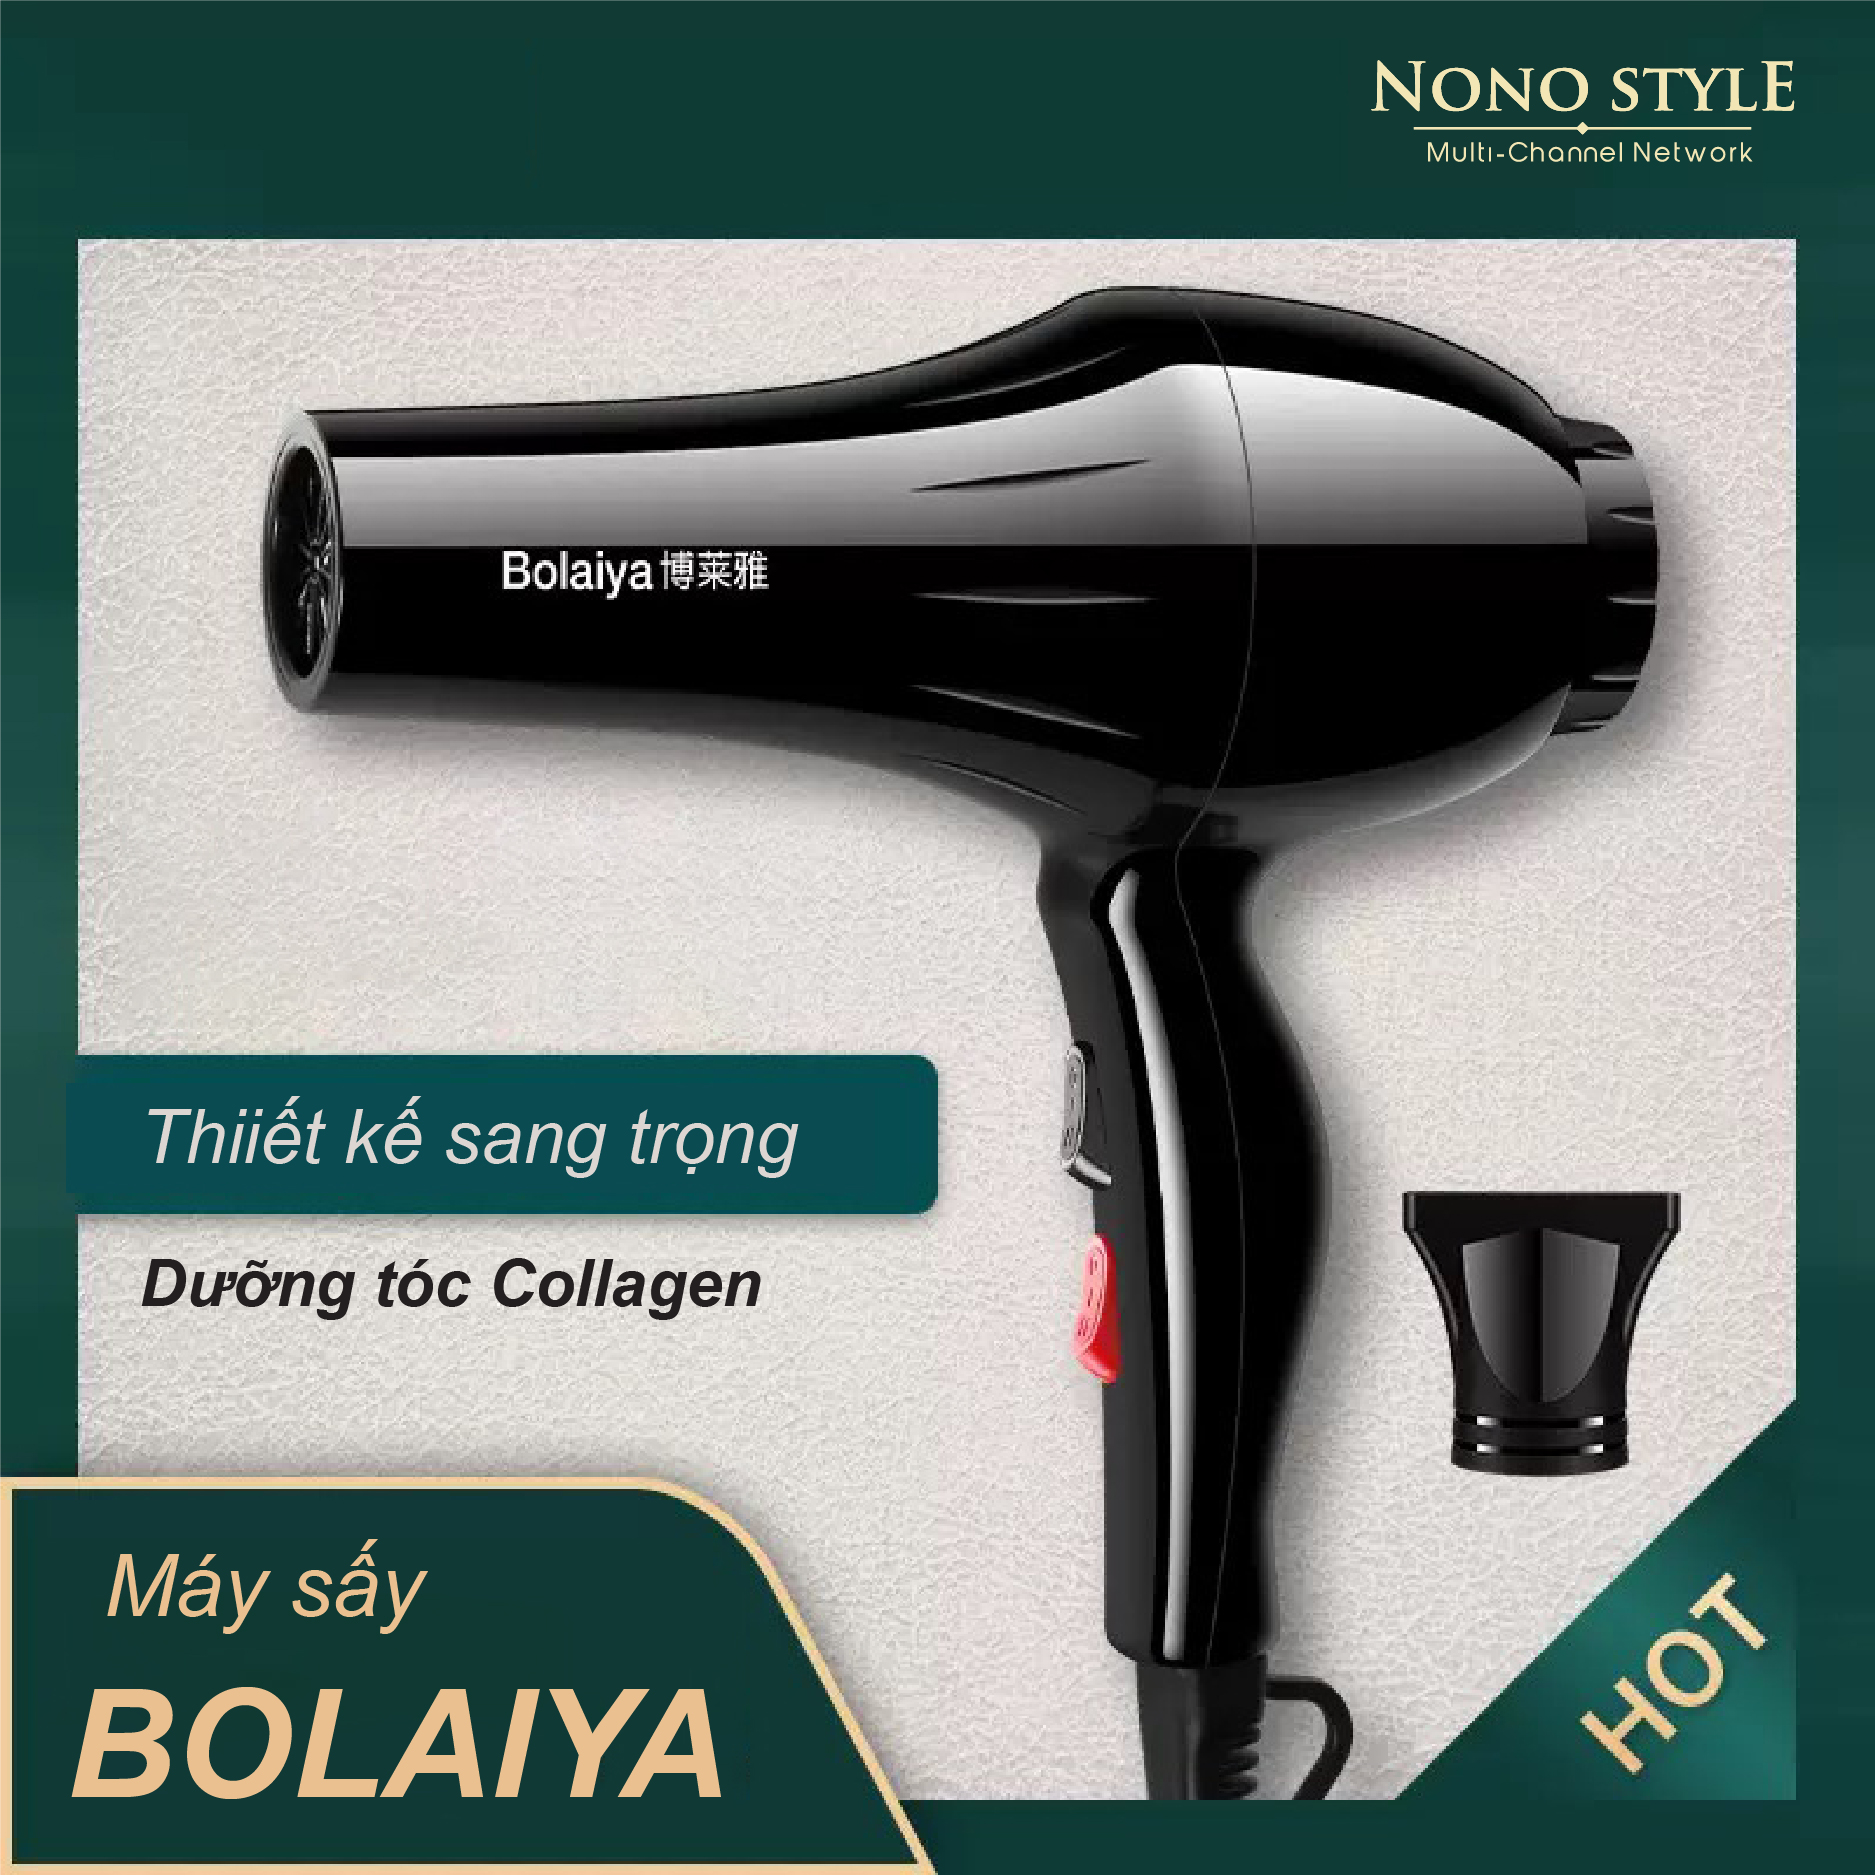 Máy sấy tóc Bolaiya công suất lớn 1800W - 2 chế độ sấy, 3 chế độ nhiệt - Hàng chính hãng